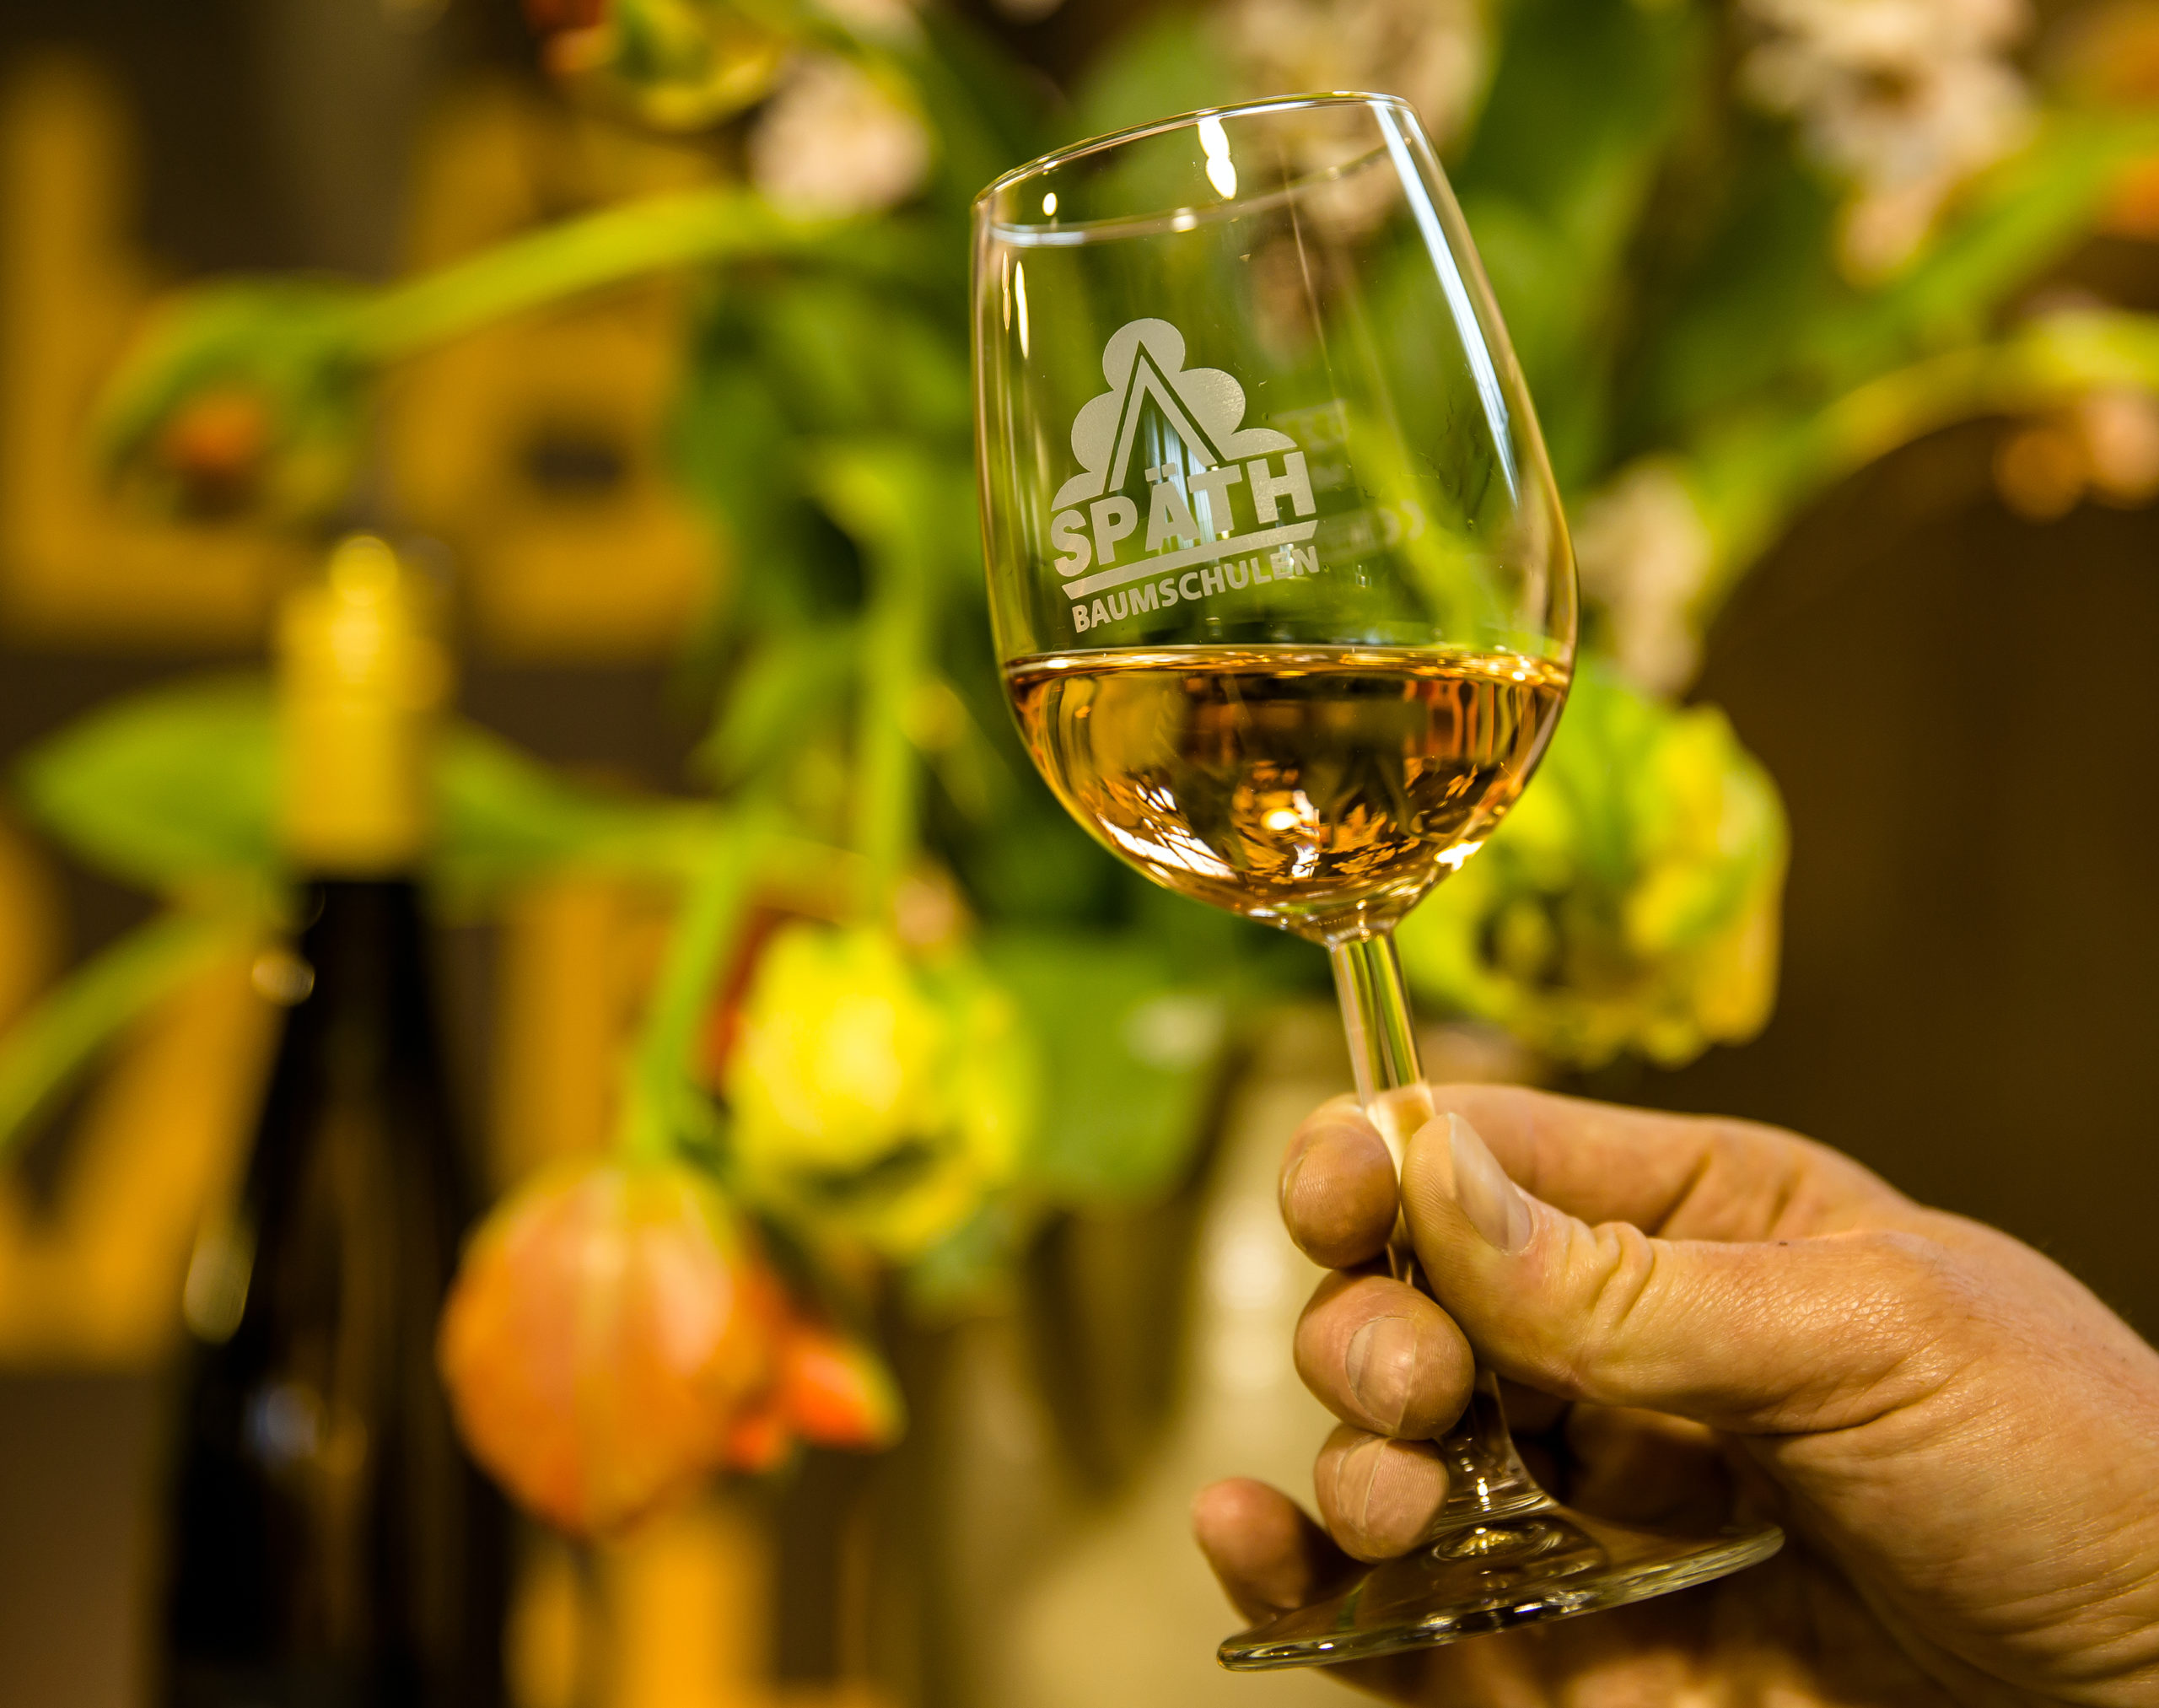 Weißwein im Weinglas mit Späth-Logo